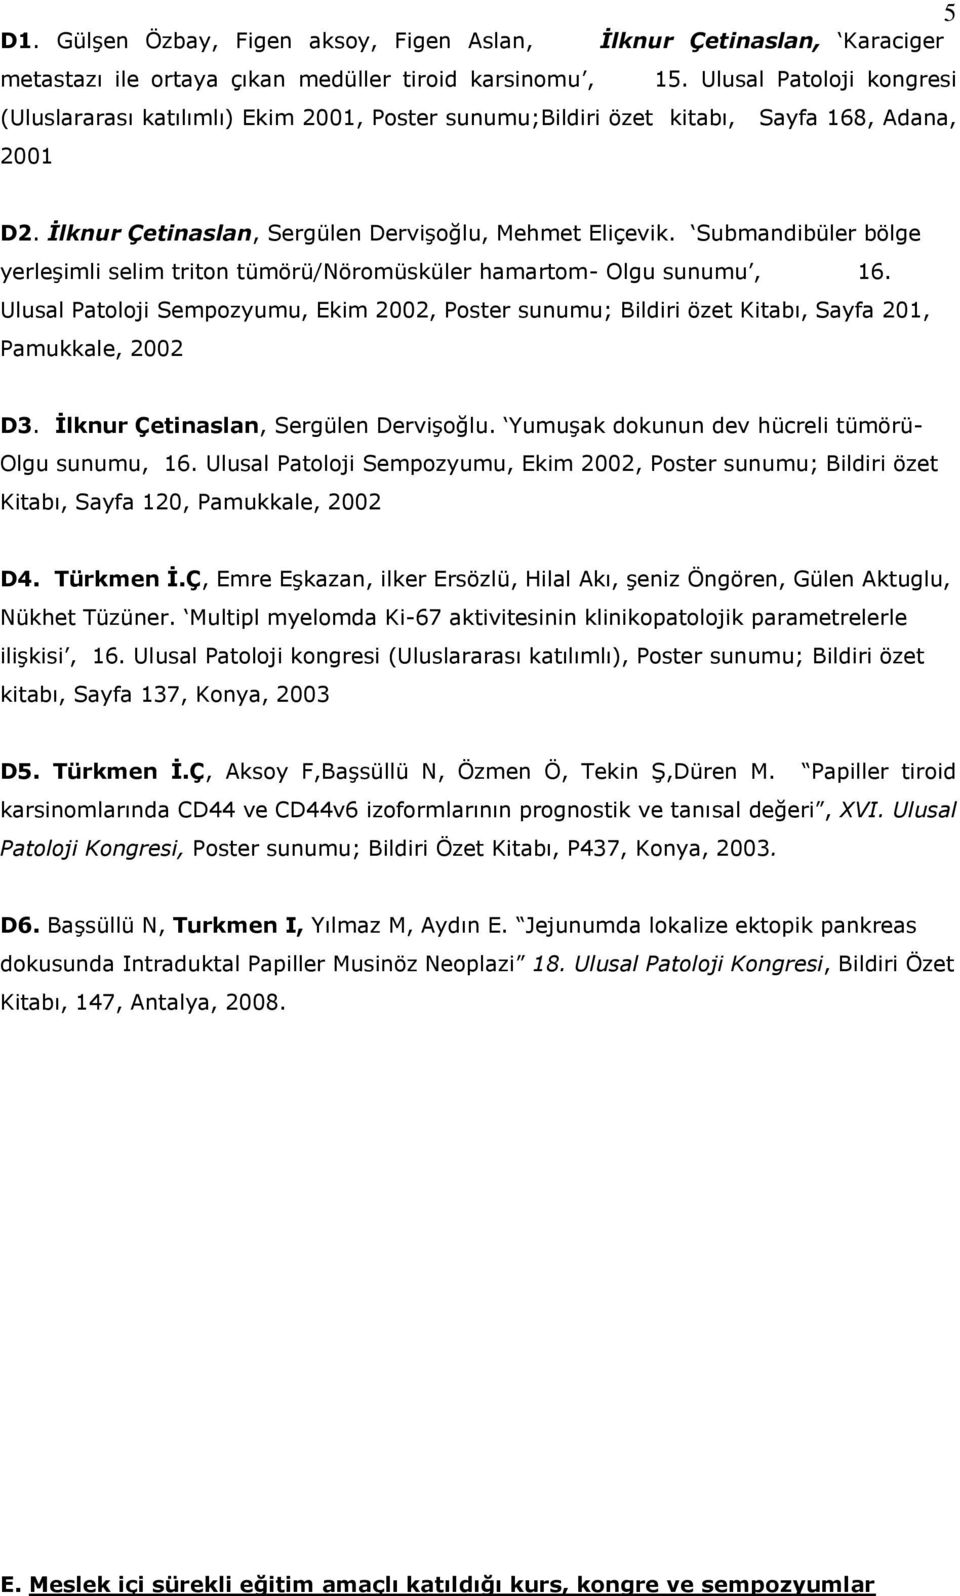 Submandibüler bölge yerleşimli selim triton tümörü/nöromüsküler hamartom- Olgu sunumu, 16. Ulusal Patoloji Sempozyumu, Ekim 2002, Poster sunumu; Bildiri özet Kitabı, Sayfa 201, Pamukkale, 2002 D3.